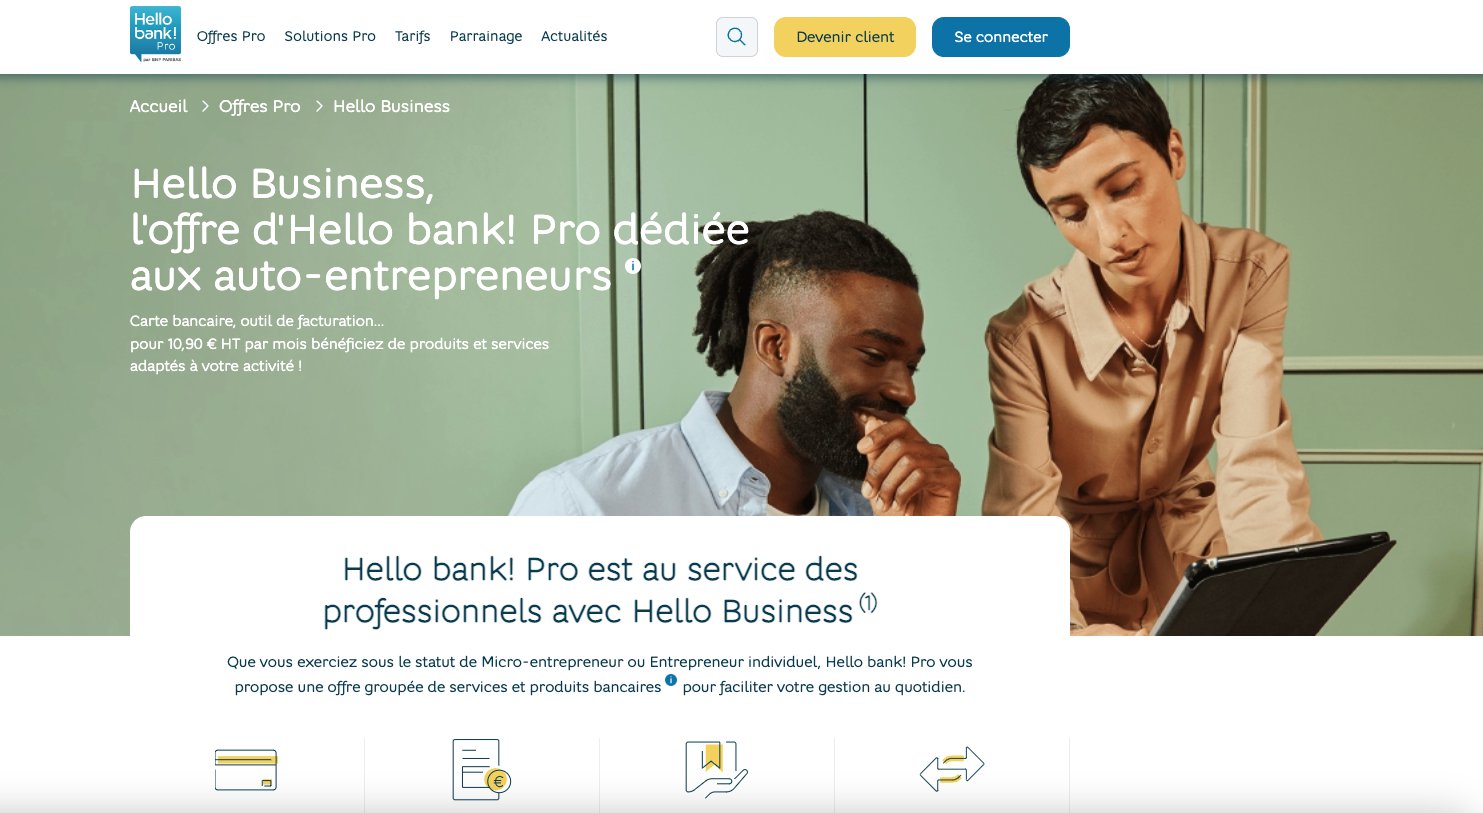 L'offre Hello Business par Hello bank! Pro